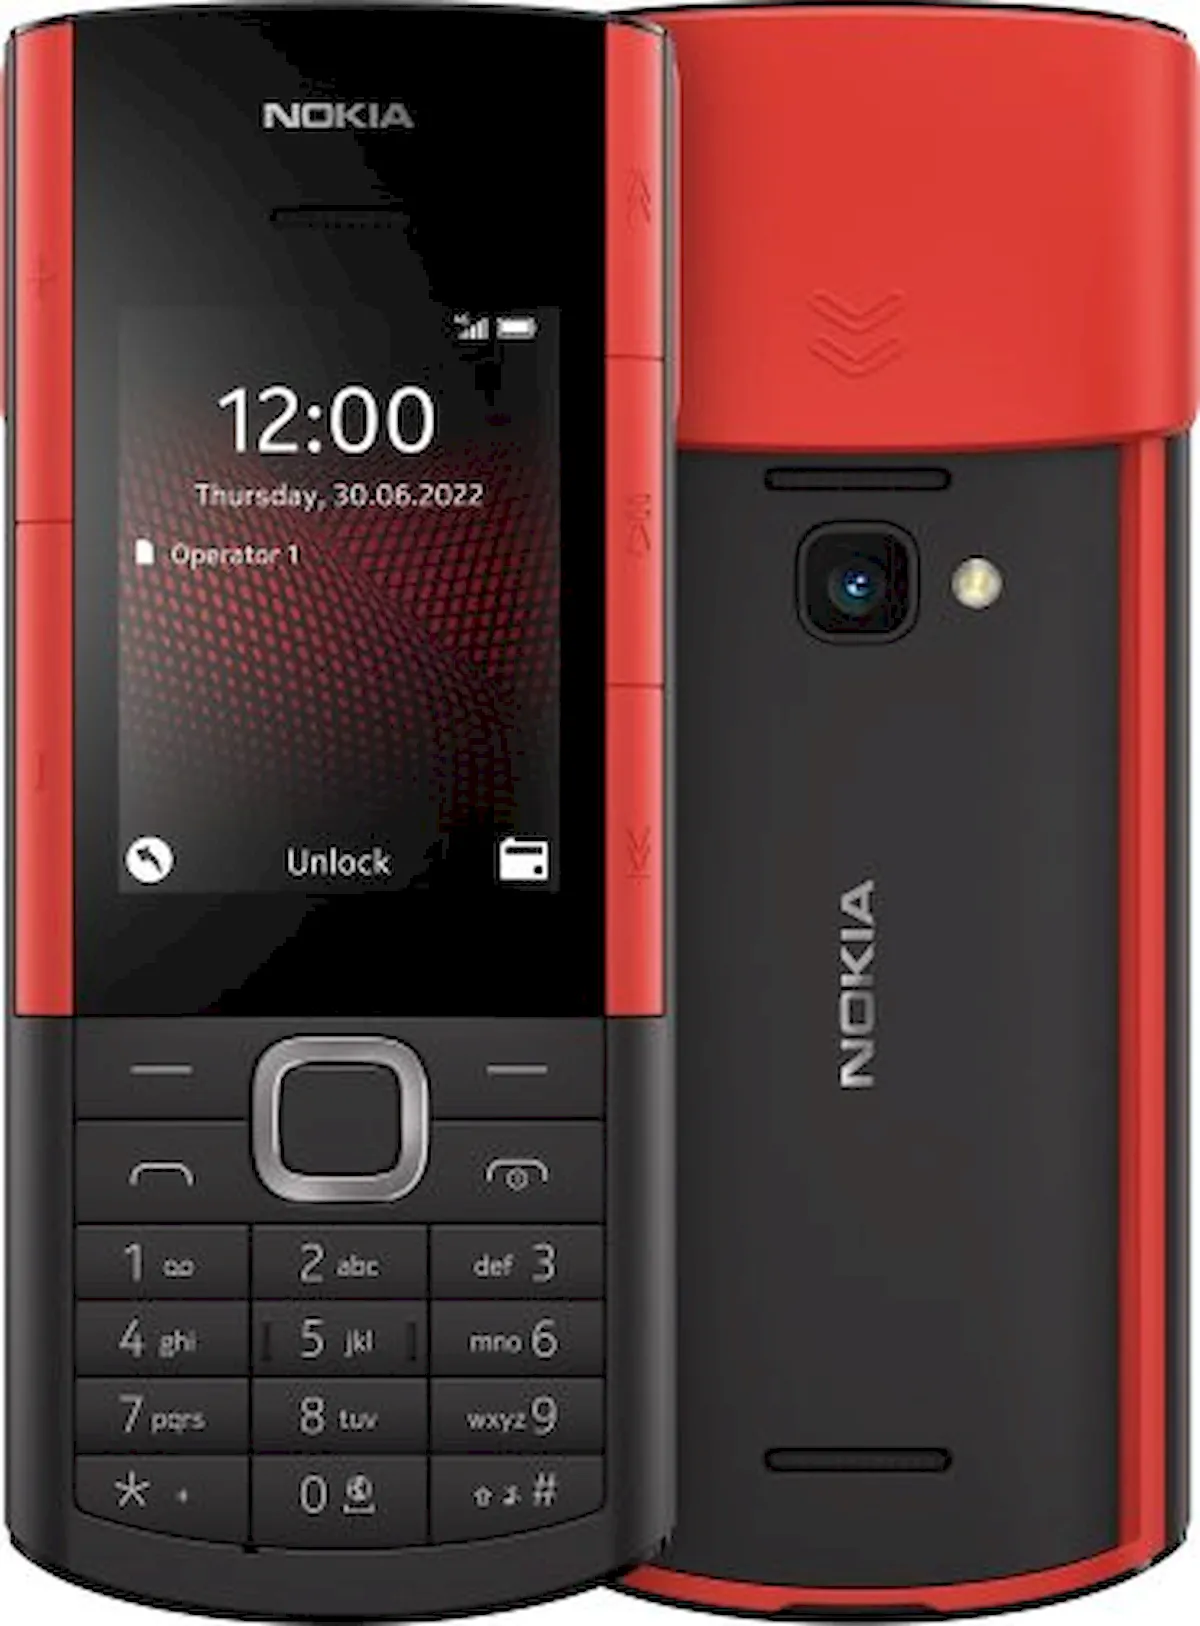 Nokia 5710 XpressAudio, um celular e estojo de carregamento para fones de ouvido sem fio